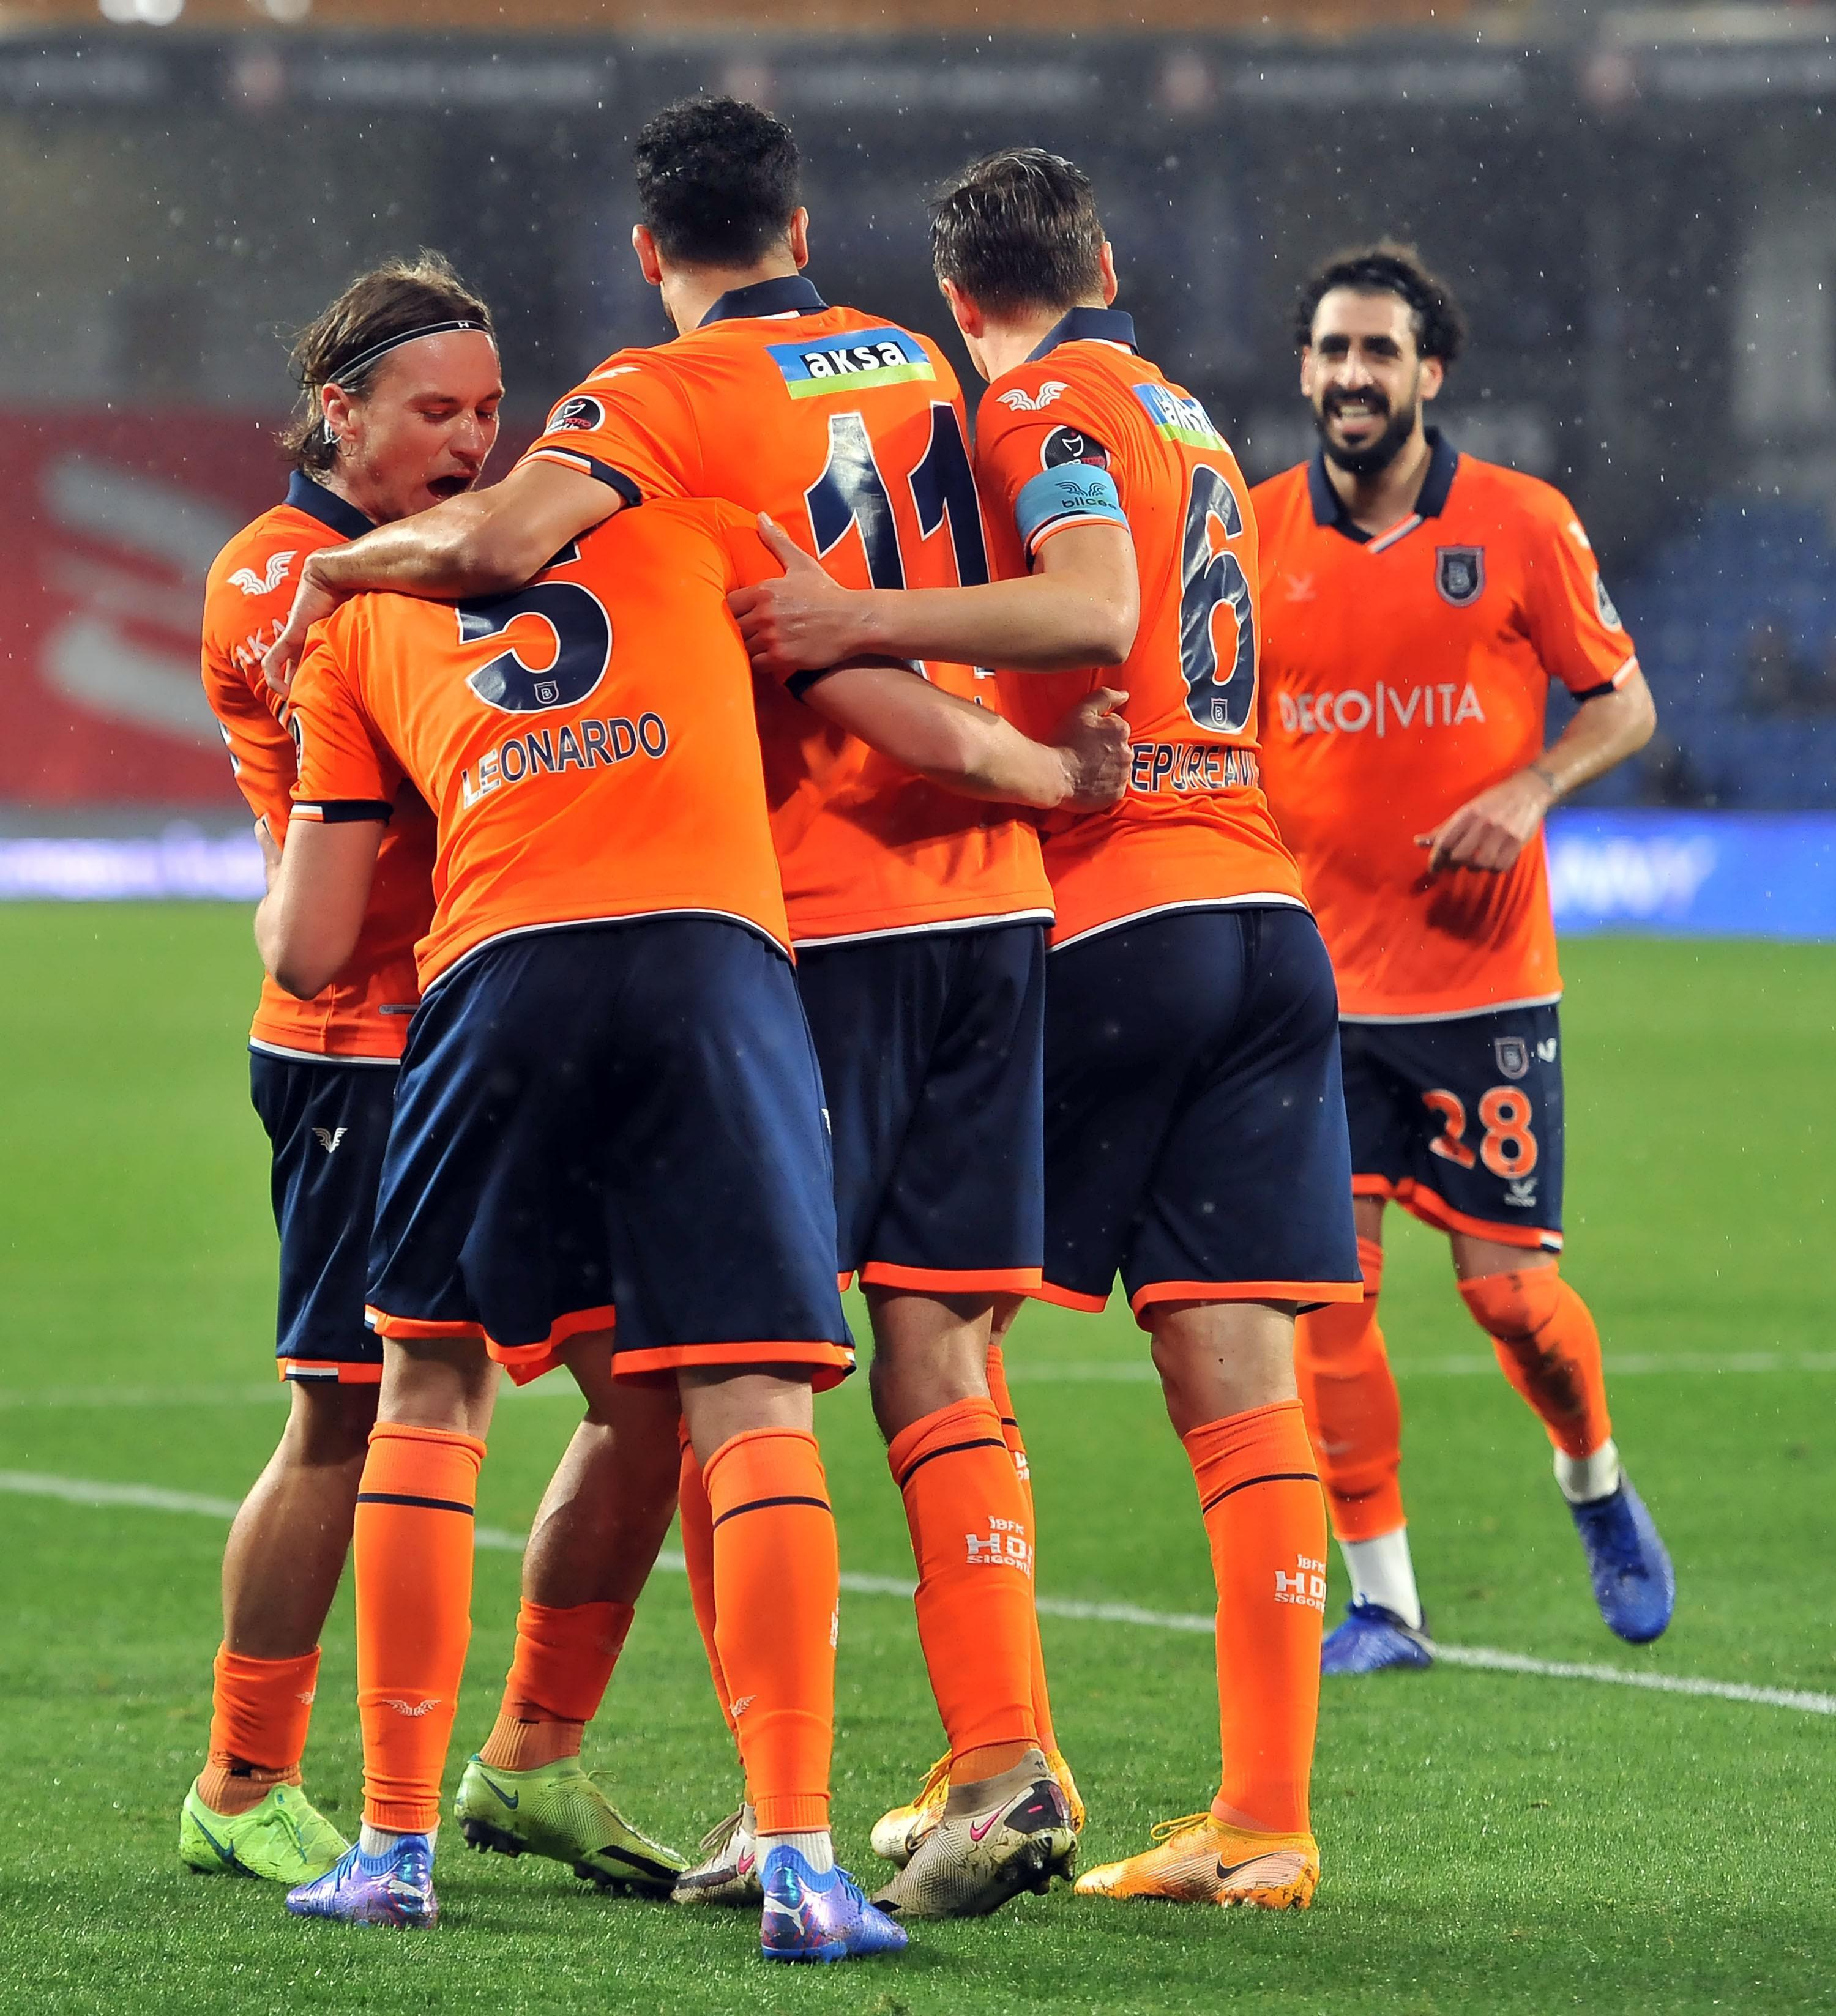 (ÖZET) Başakşehir - Konyaspor maç sonucu: 2-1